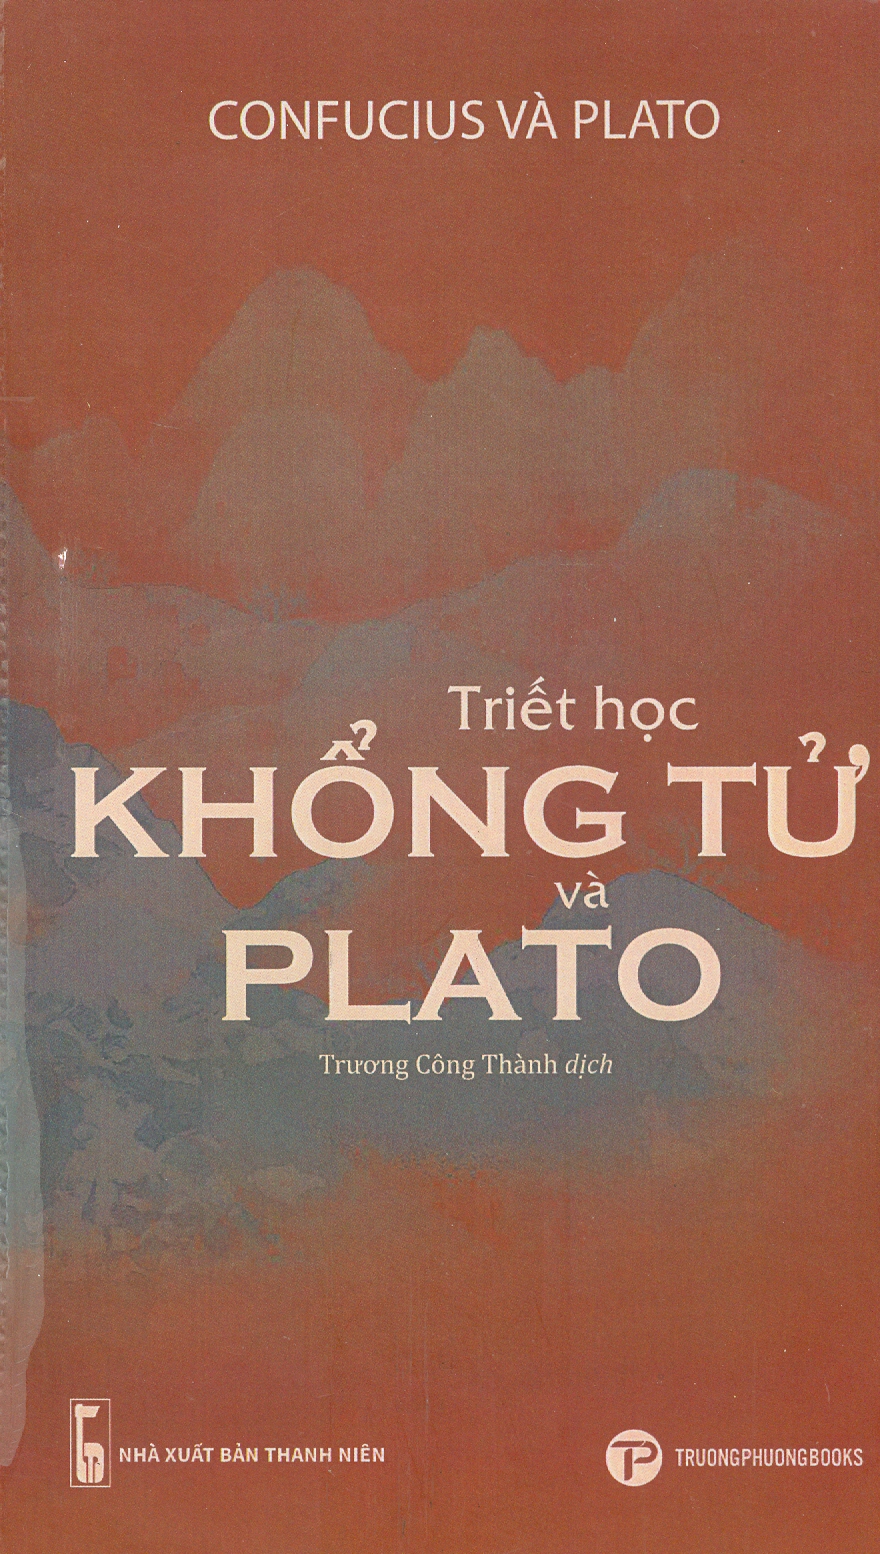 TRIẾT HỌC KHỔNG TỬ VÀ PLATO-  Coufucius và Plato – Trương Công Thành dịch – Trường Phương Books - NXB Thanh Niên